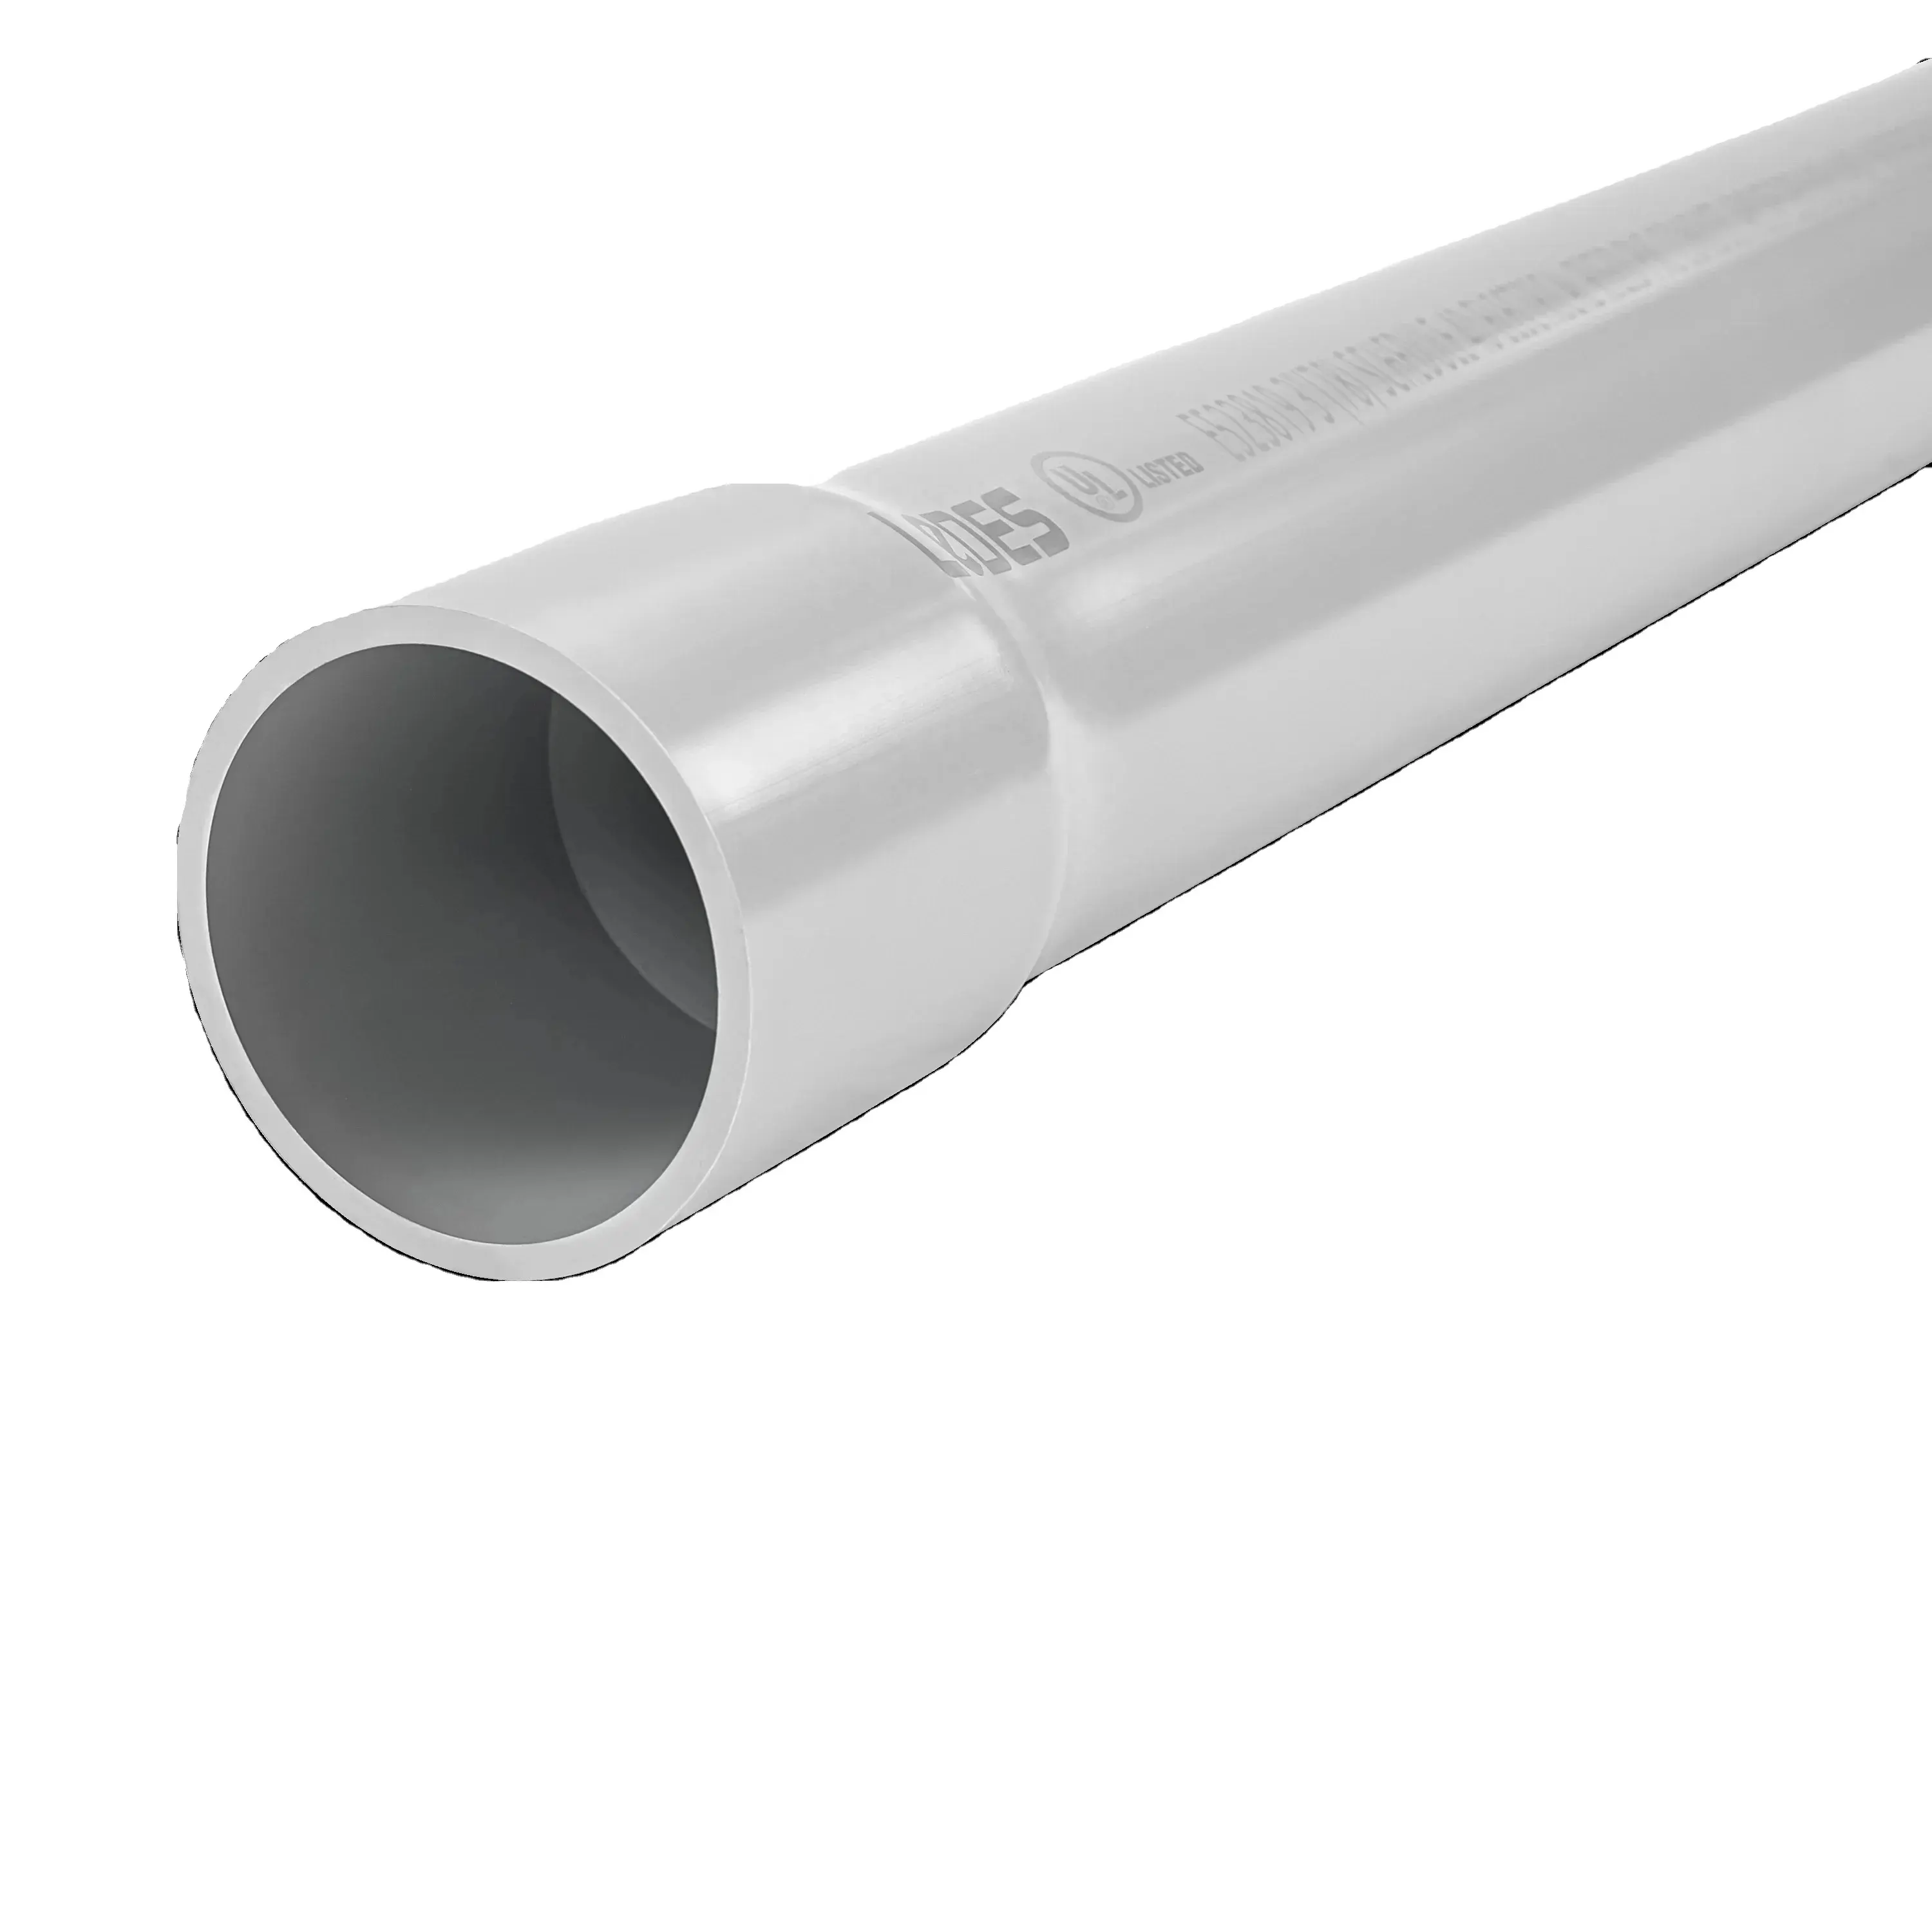 LeDES 3 "Sch 40 tuyau en PVC FT4 tuyau de conduit en PVC rigide électrique résistant au feu certifié UL 651 résistant à la lumière du soleil pour le projet de câblage